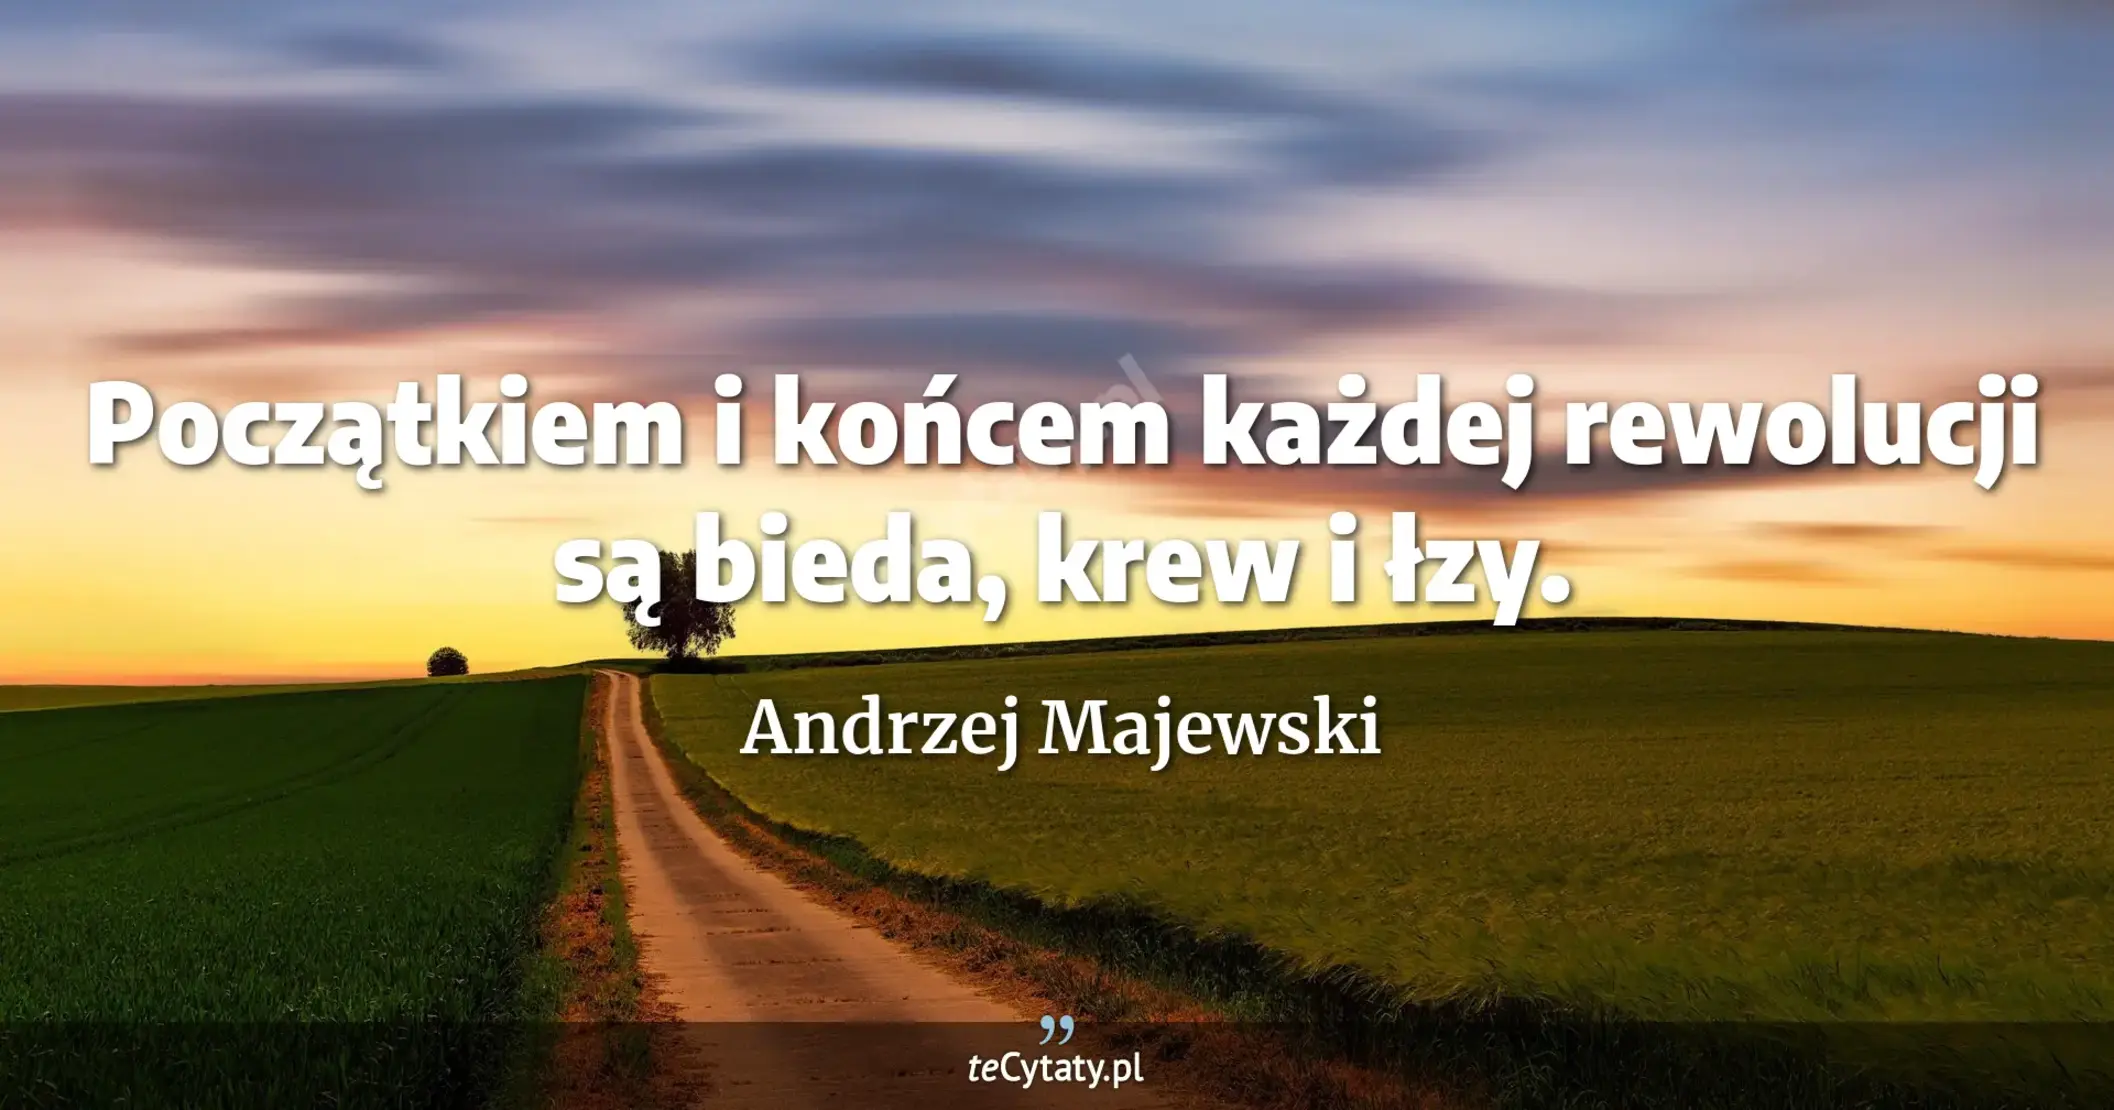 Początkiem i końcem każdej rewolucji są bieda, krew i łzy. - Andrzej Majewski